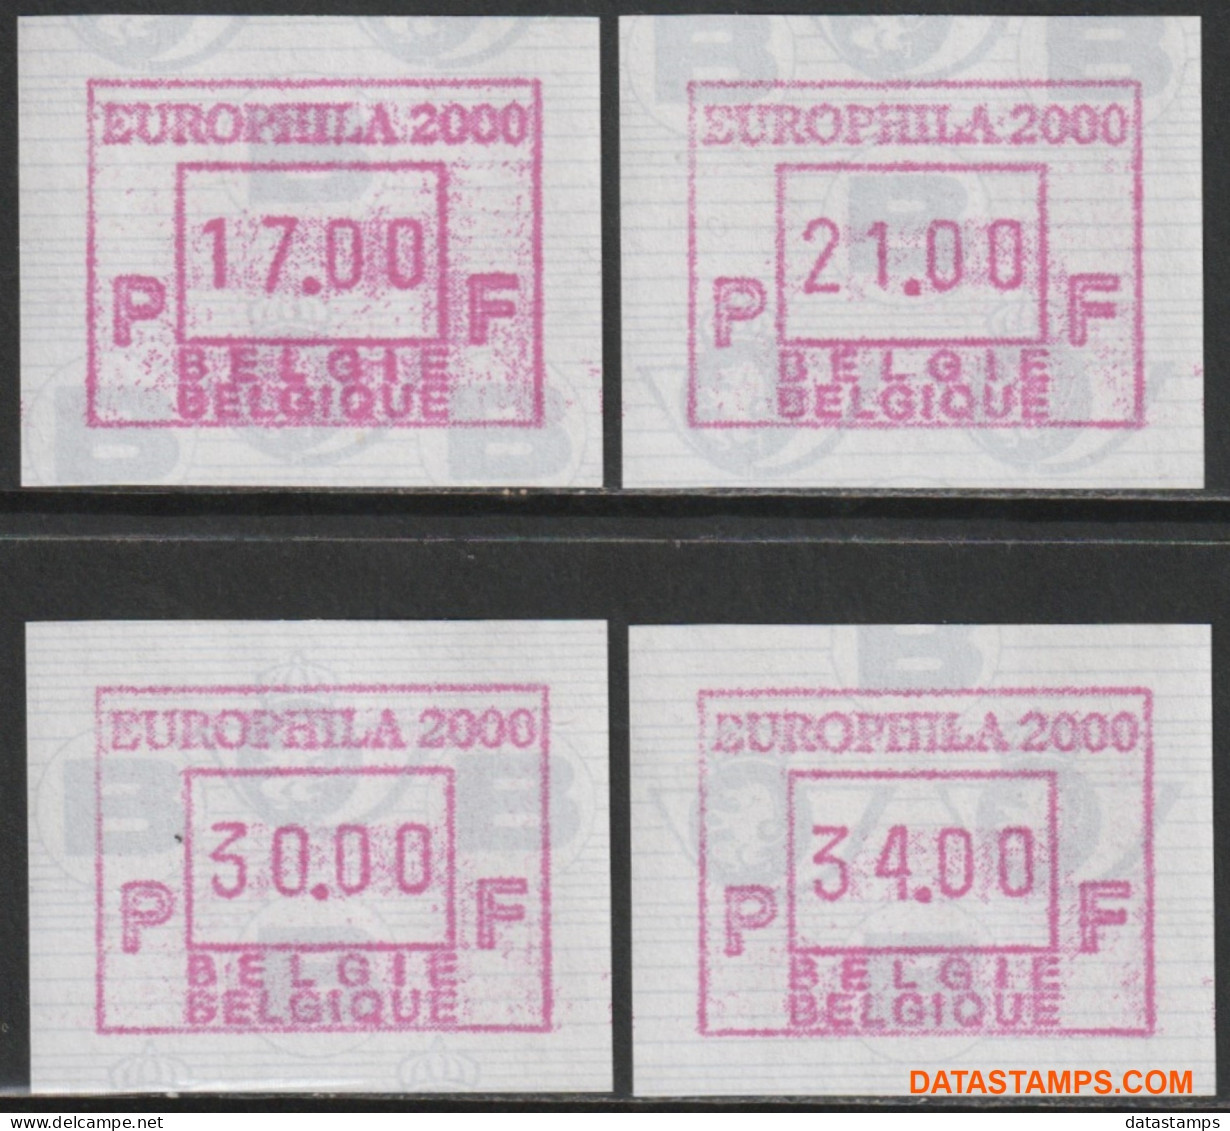 België 2000 - Mi:Autom 41, Yv:TD 50, OBP:ATM 101 Set, Machine Stamp - XX - Europhila 2000 - Neufs